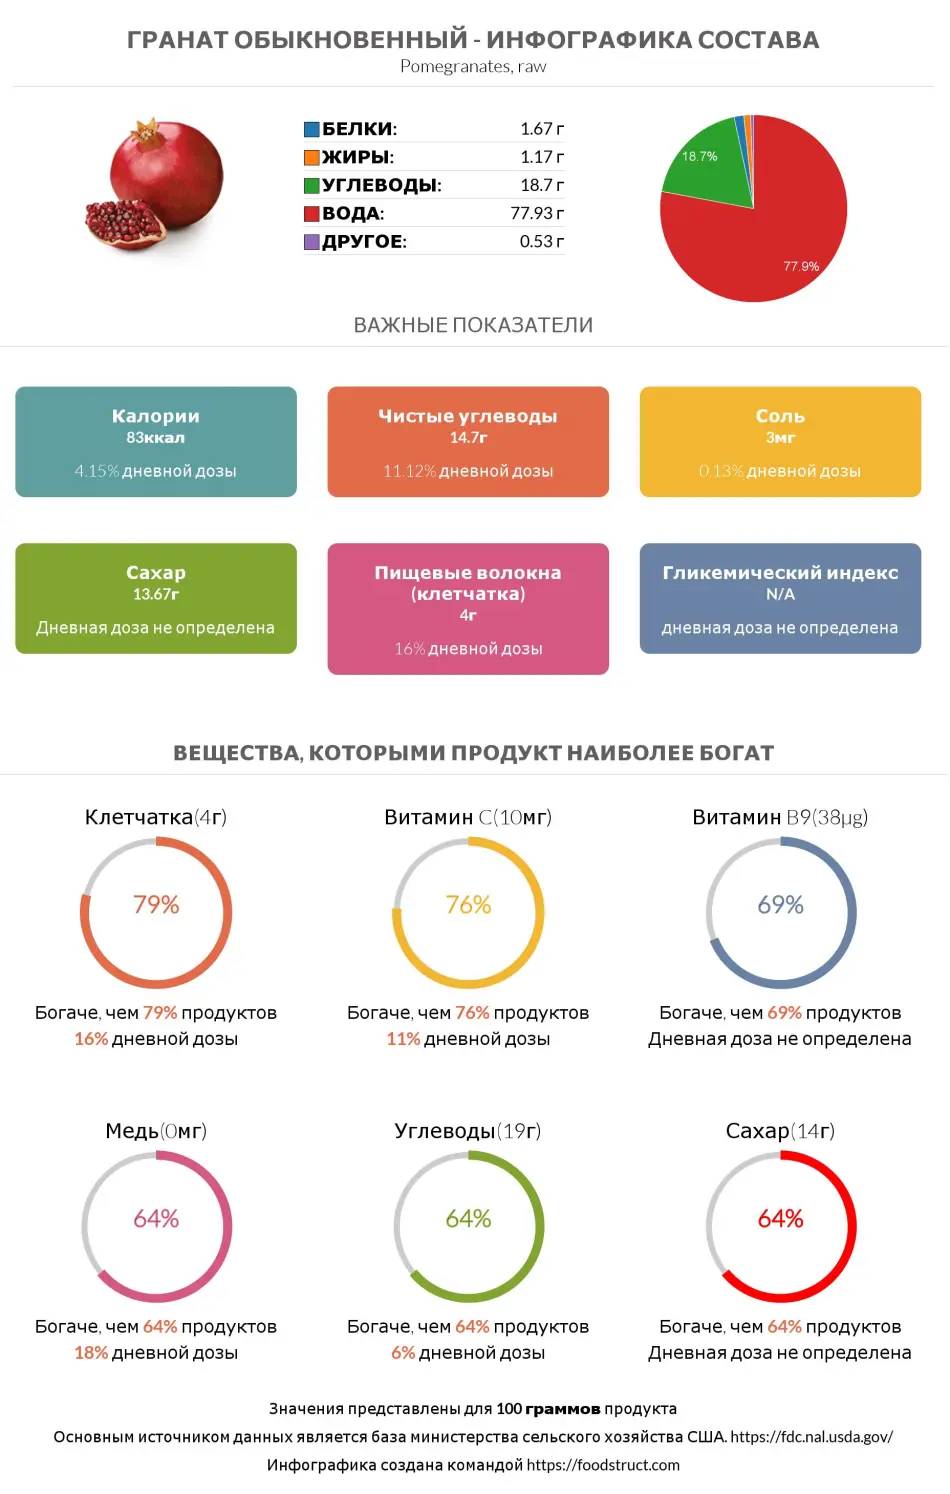 Инфографика состава и питательности для продукта Гранат обыкновенный